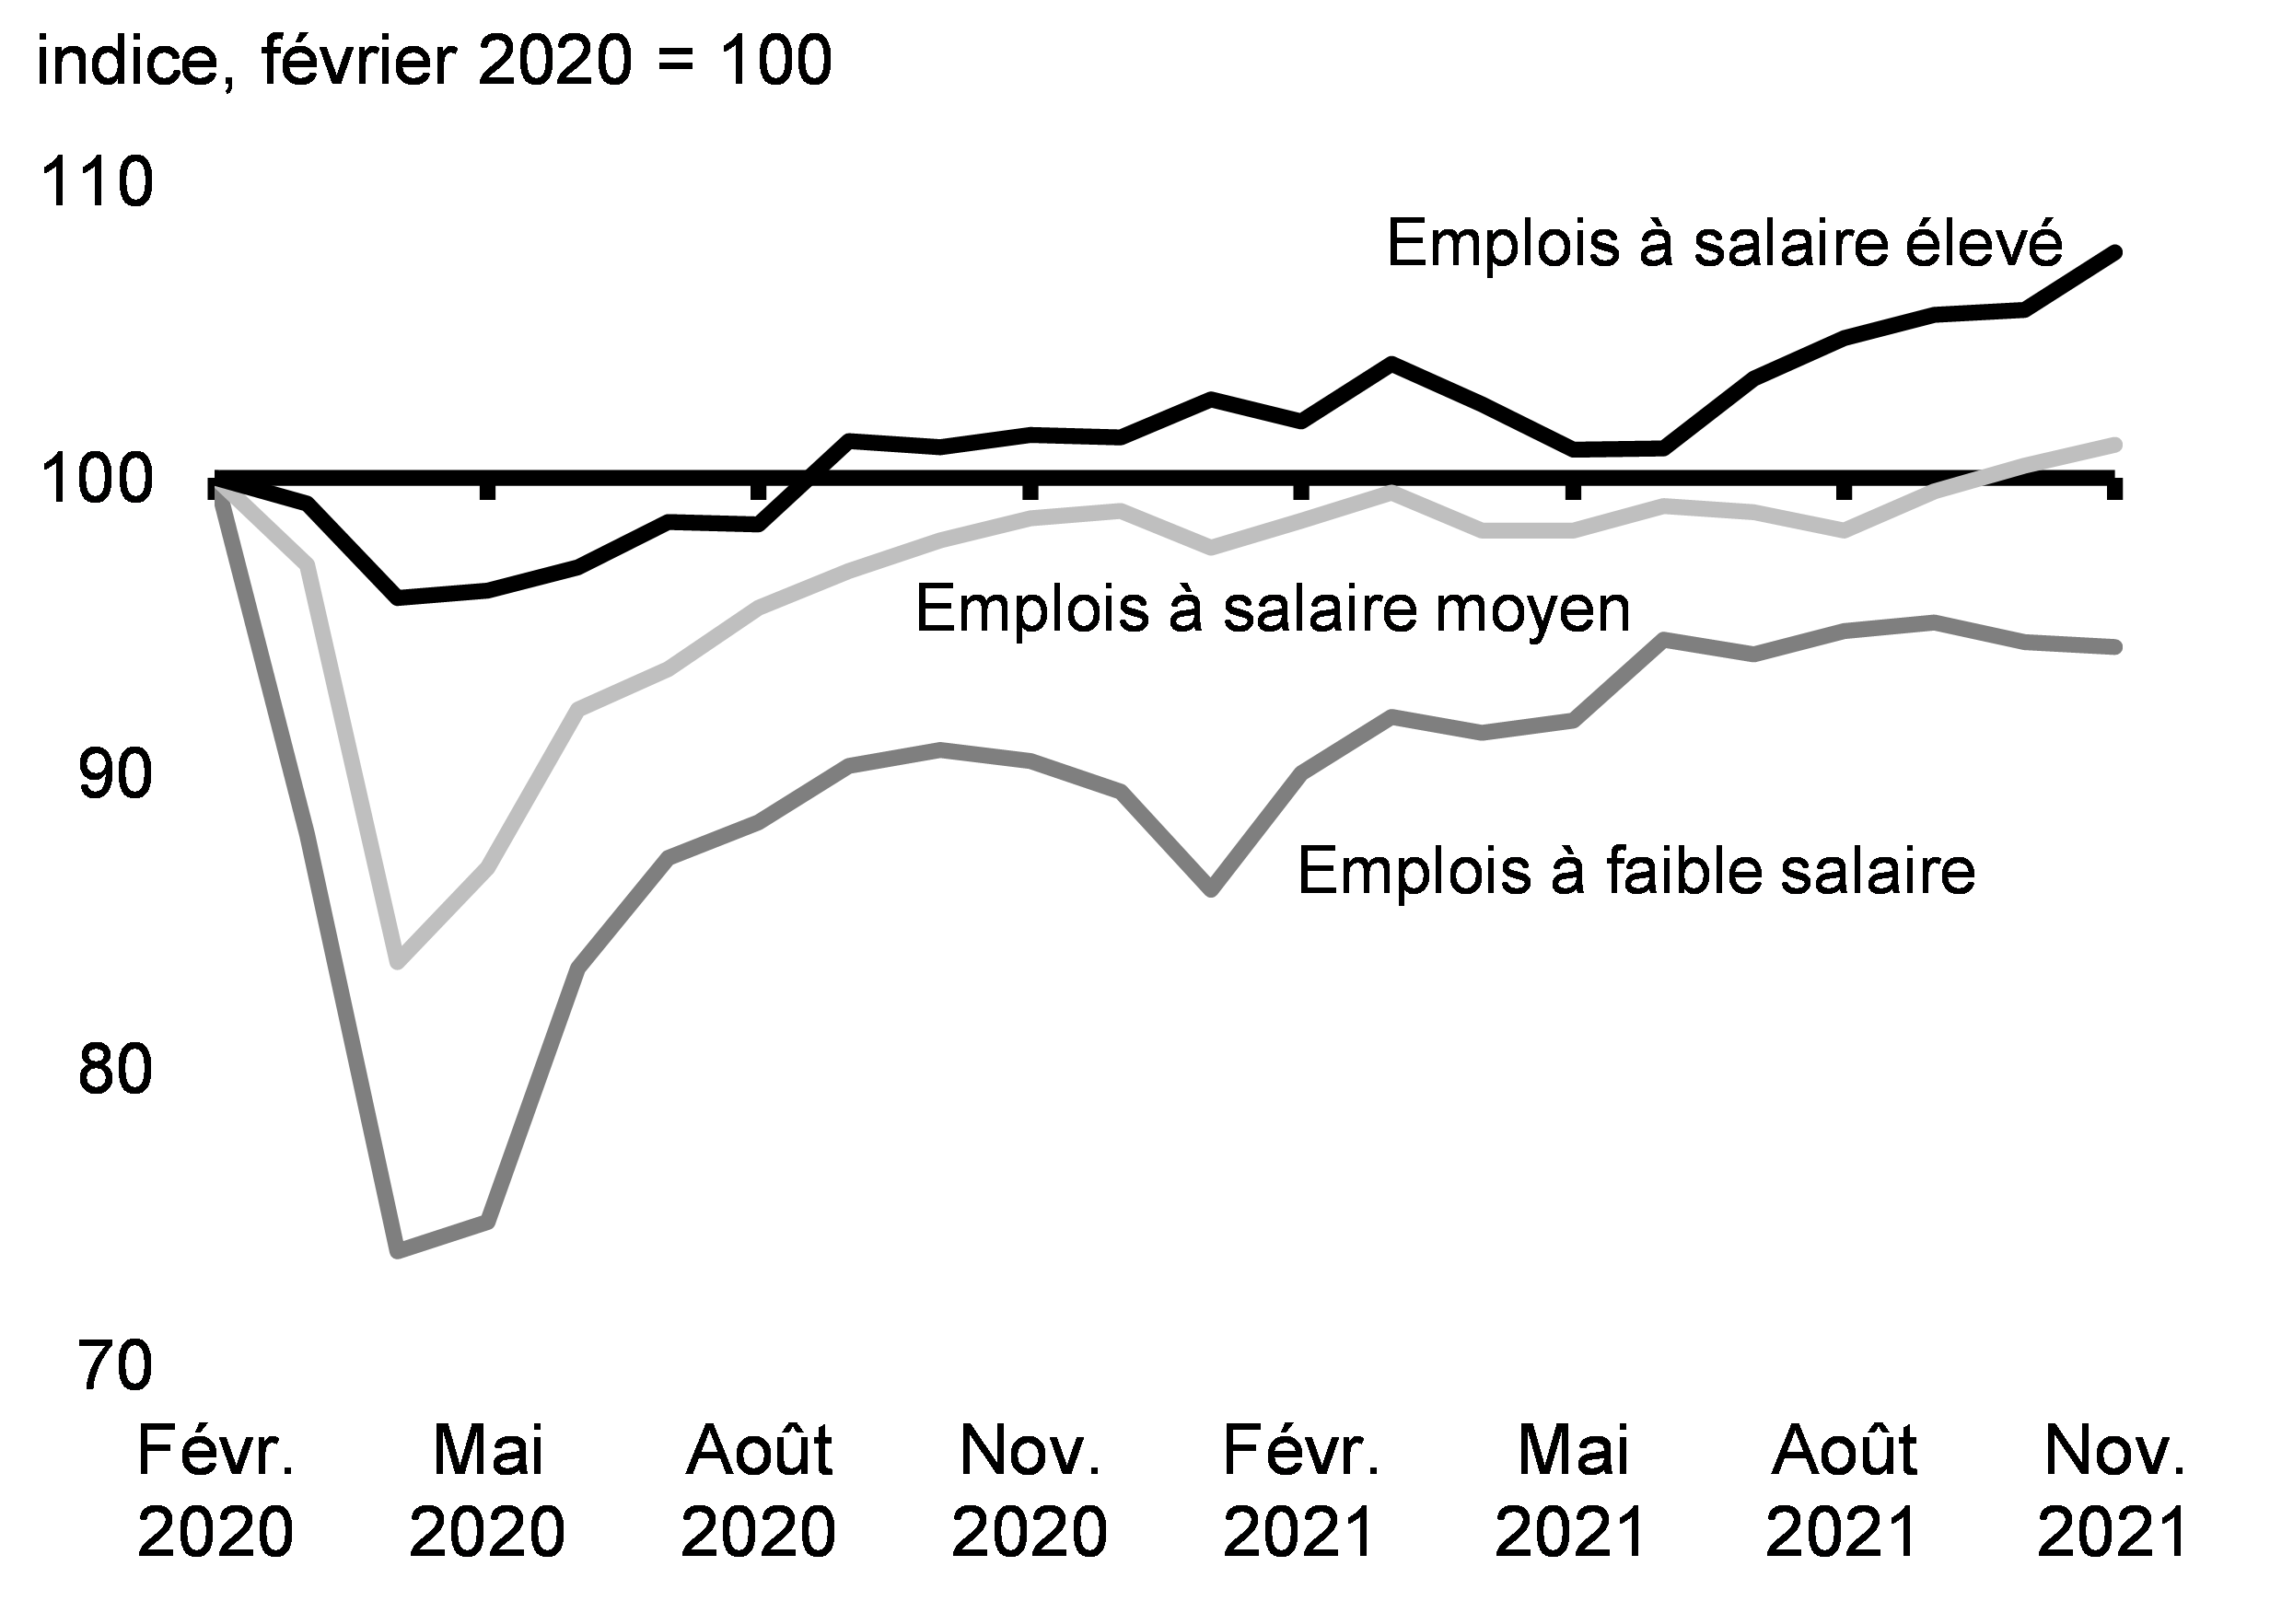 Graphique 2.7 : Évolution de l’emploi par niveau salarial depuis février 2020